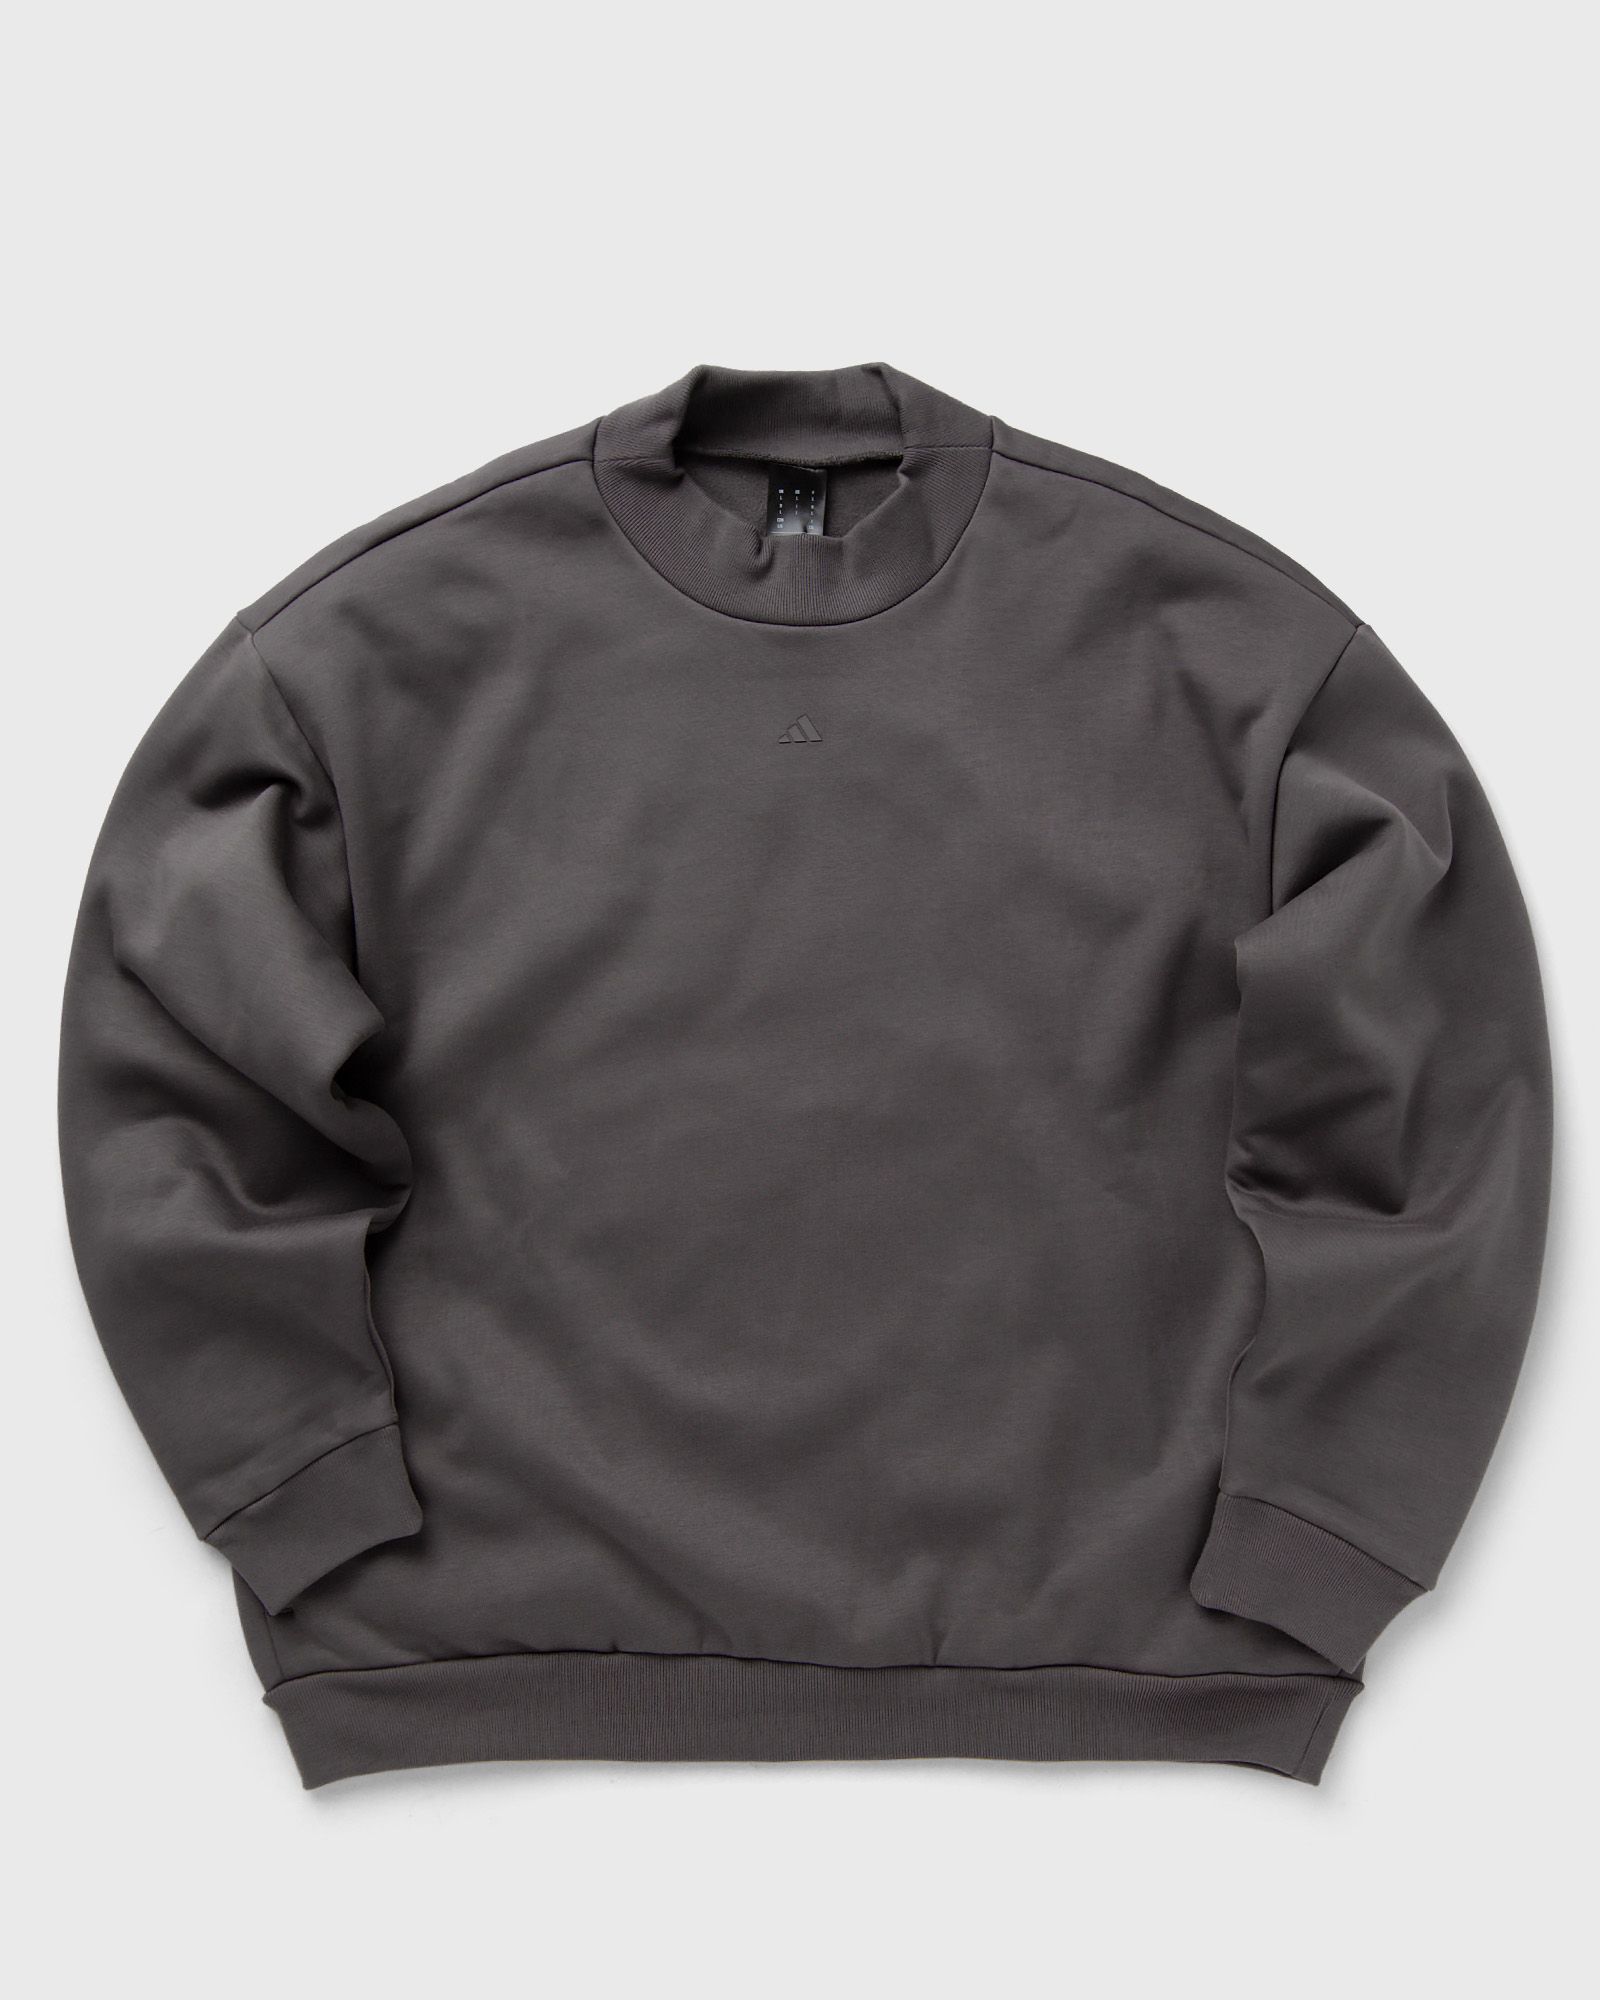 Adidas - one fl crew men sweatshirts grey in größe:xl